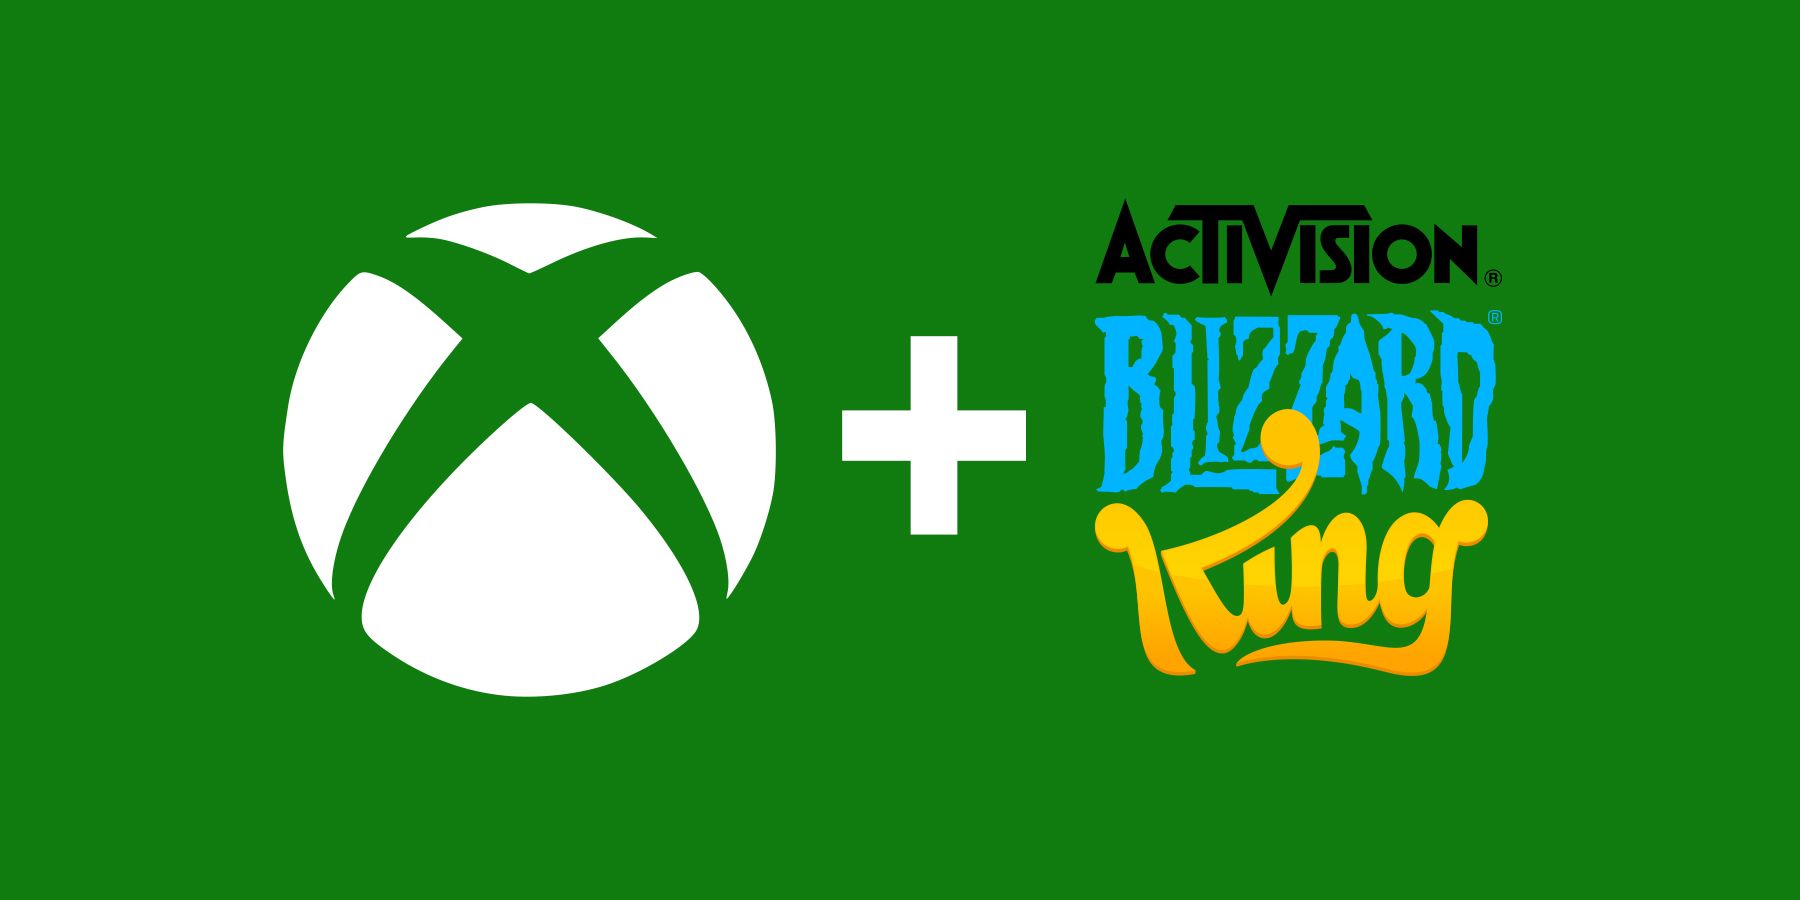 Xbox plus Activision Blizzard King logos on Dark Green